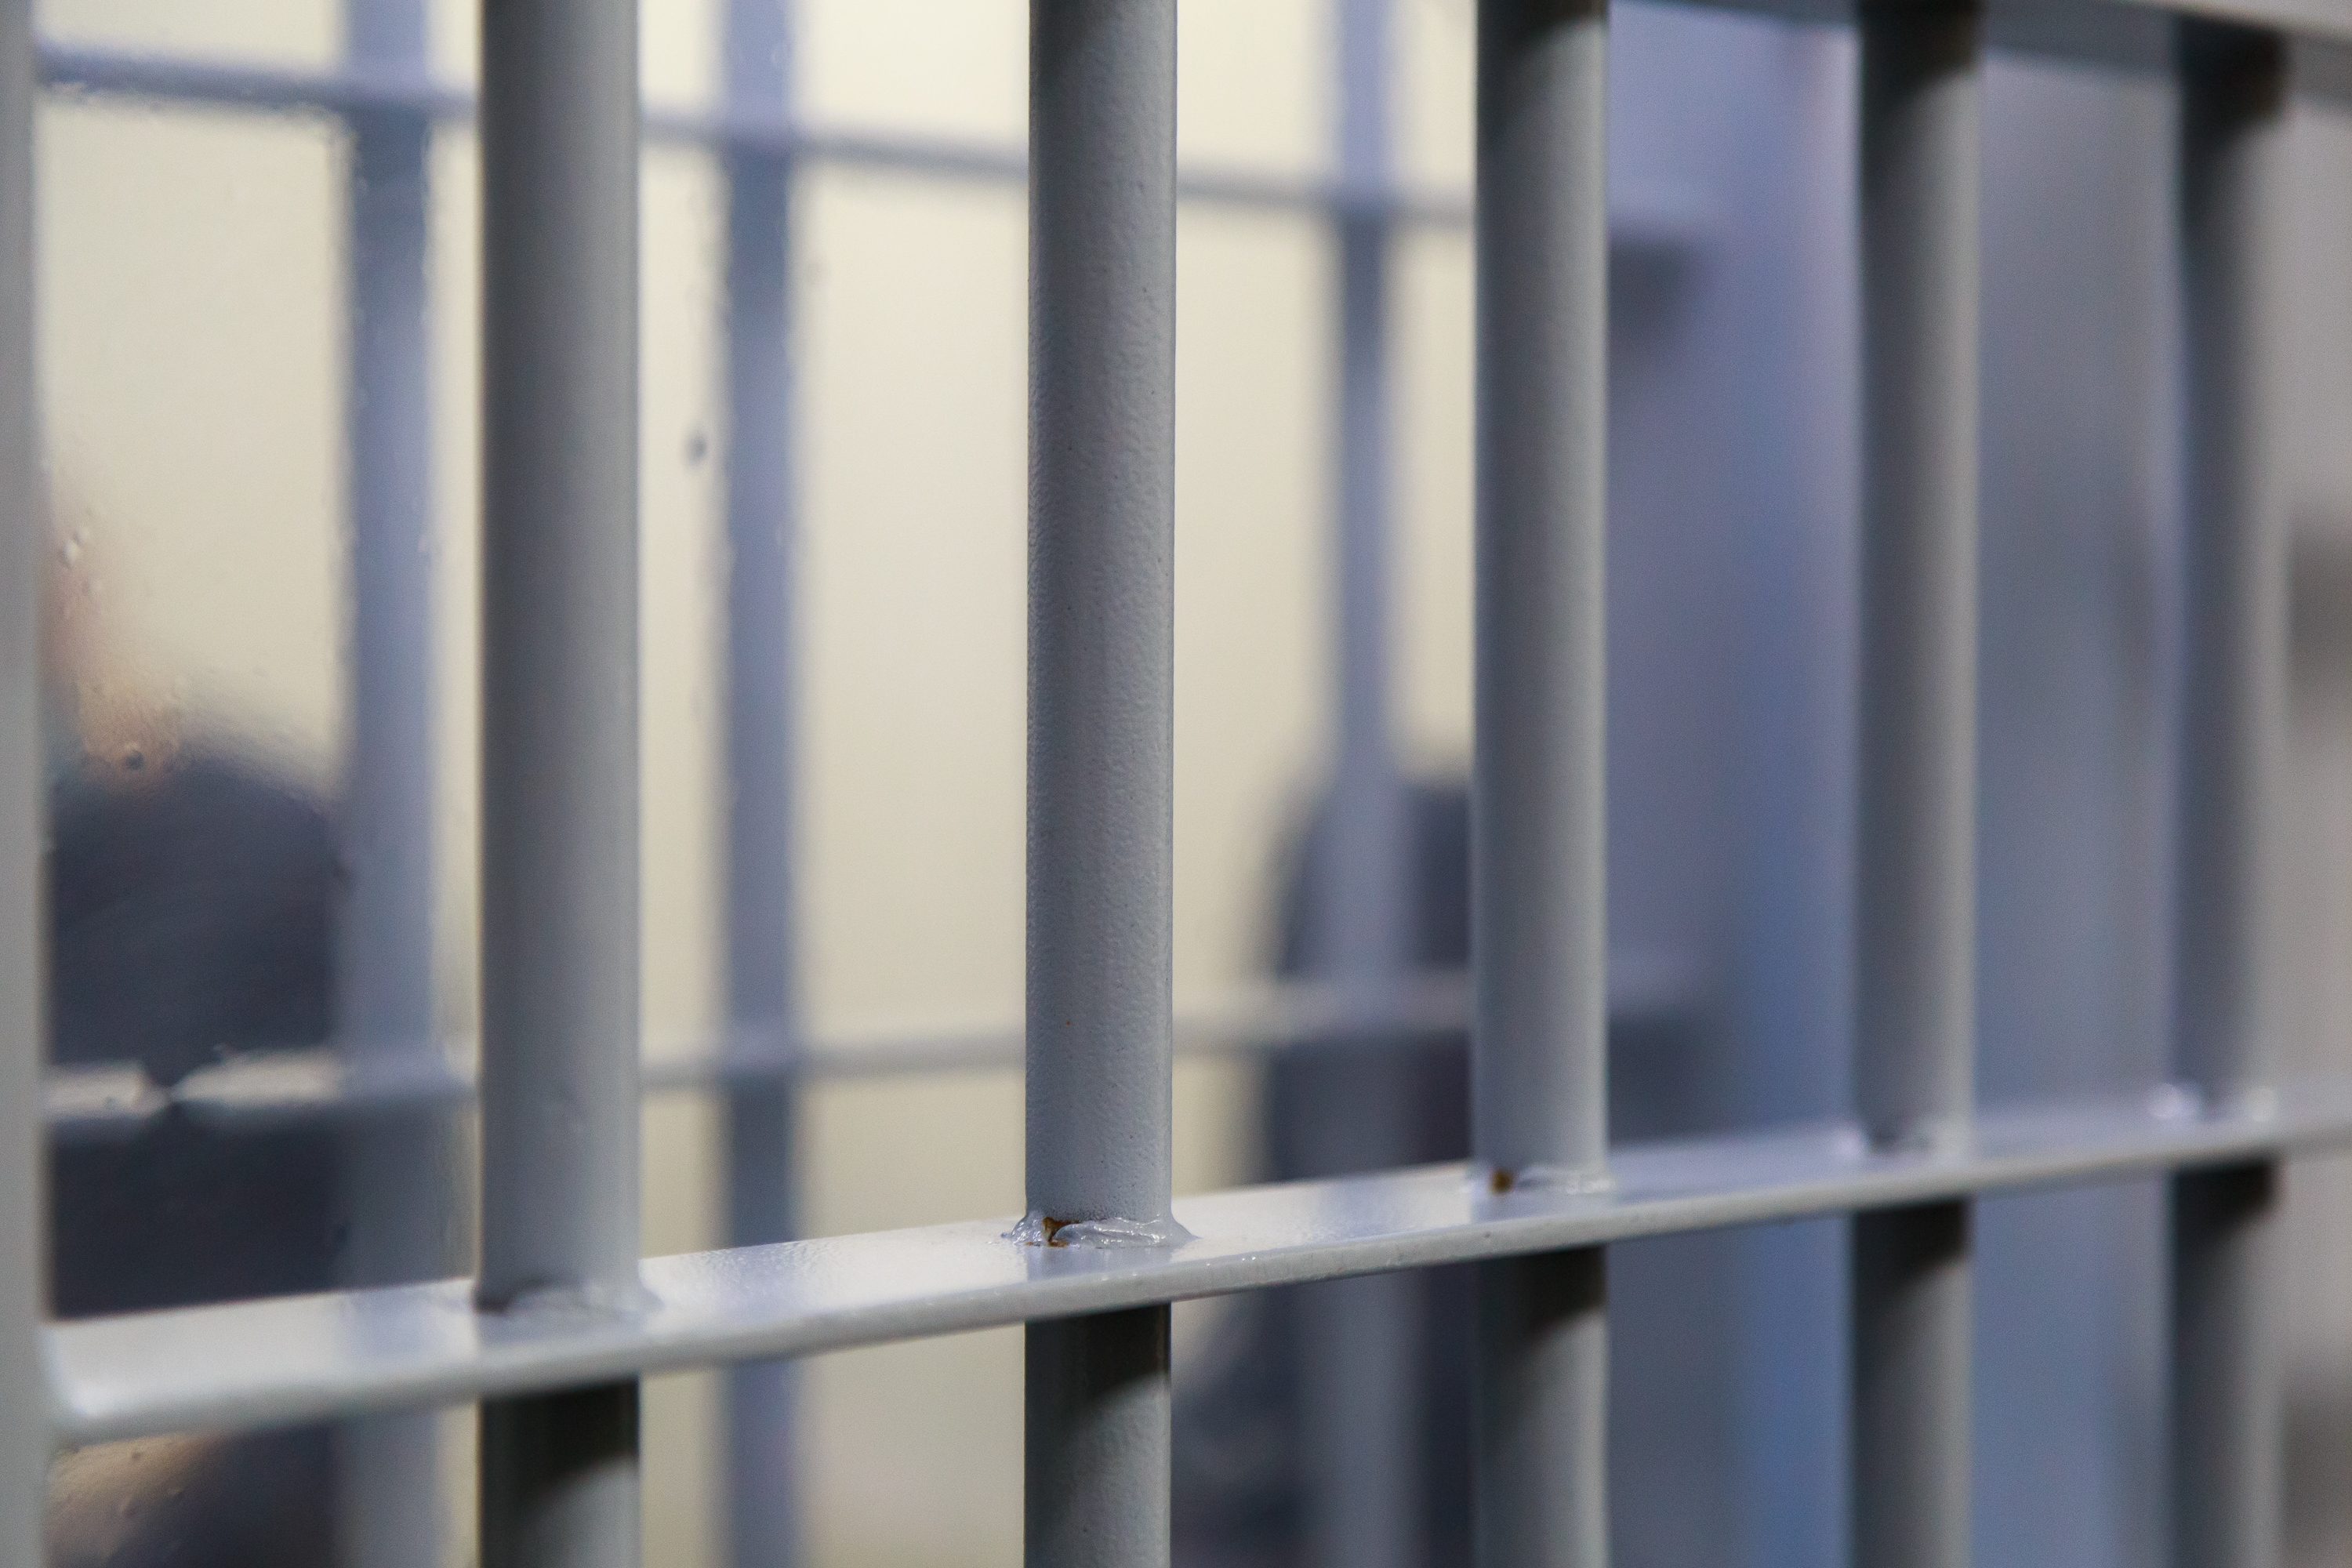     Un gardien de prison condamné à 10 mois de prison ferme 

